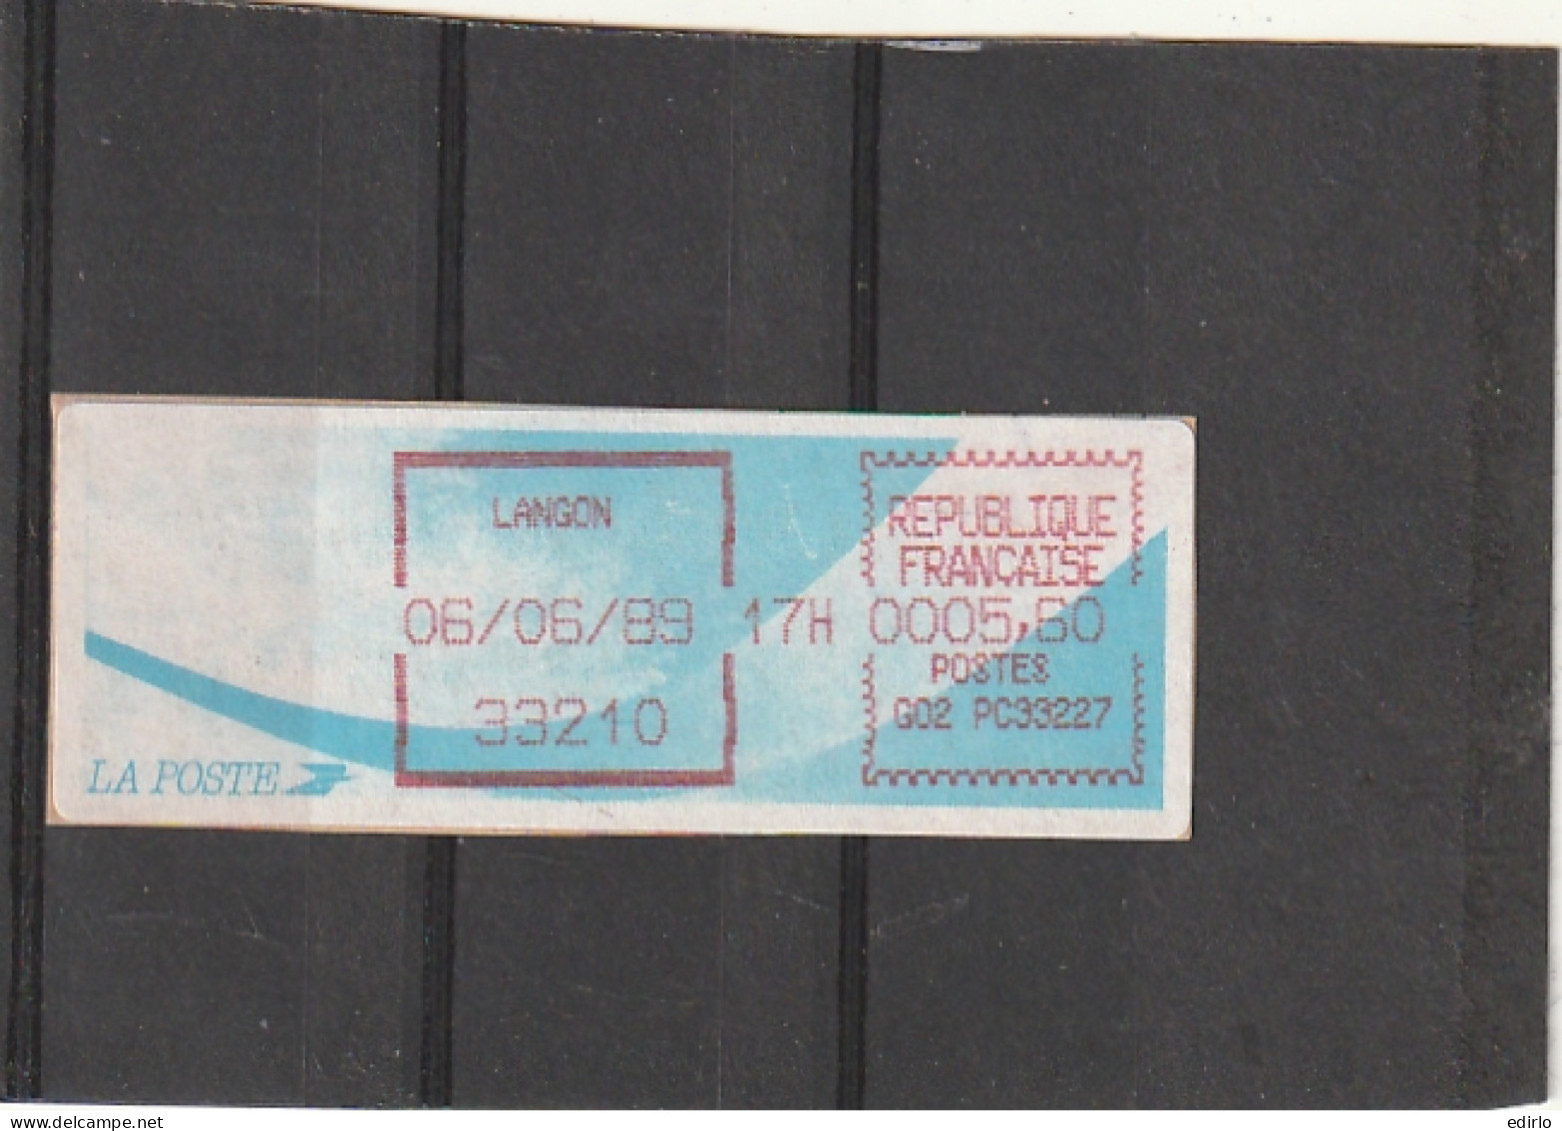 ///  FRANCE ///  LSA  Timbre Vignette Distributeur Comète LANGON  Gironde - 1988 « Comète »